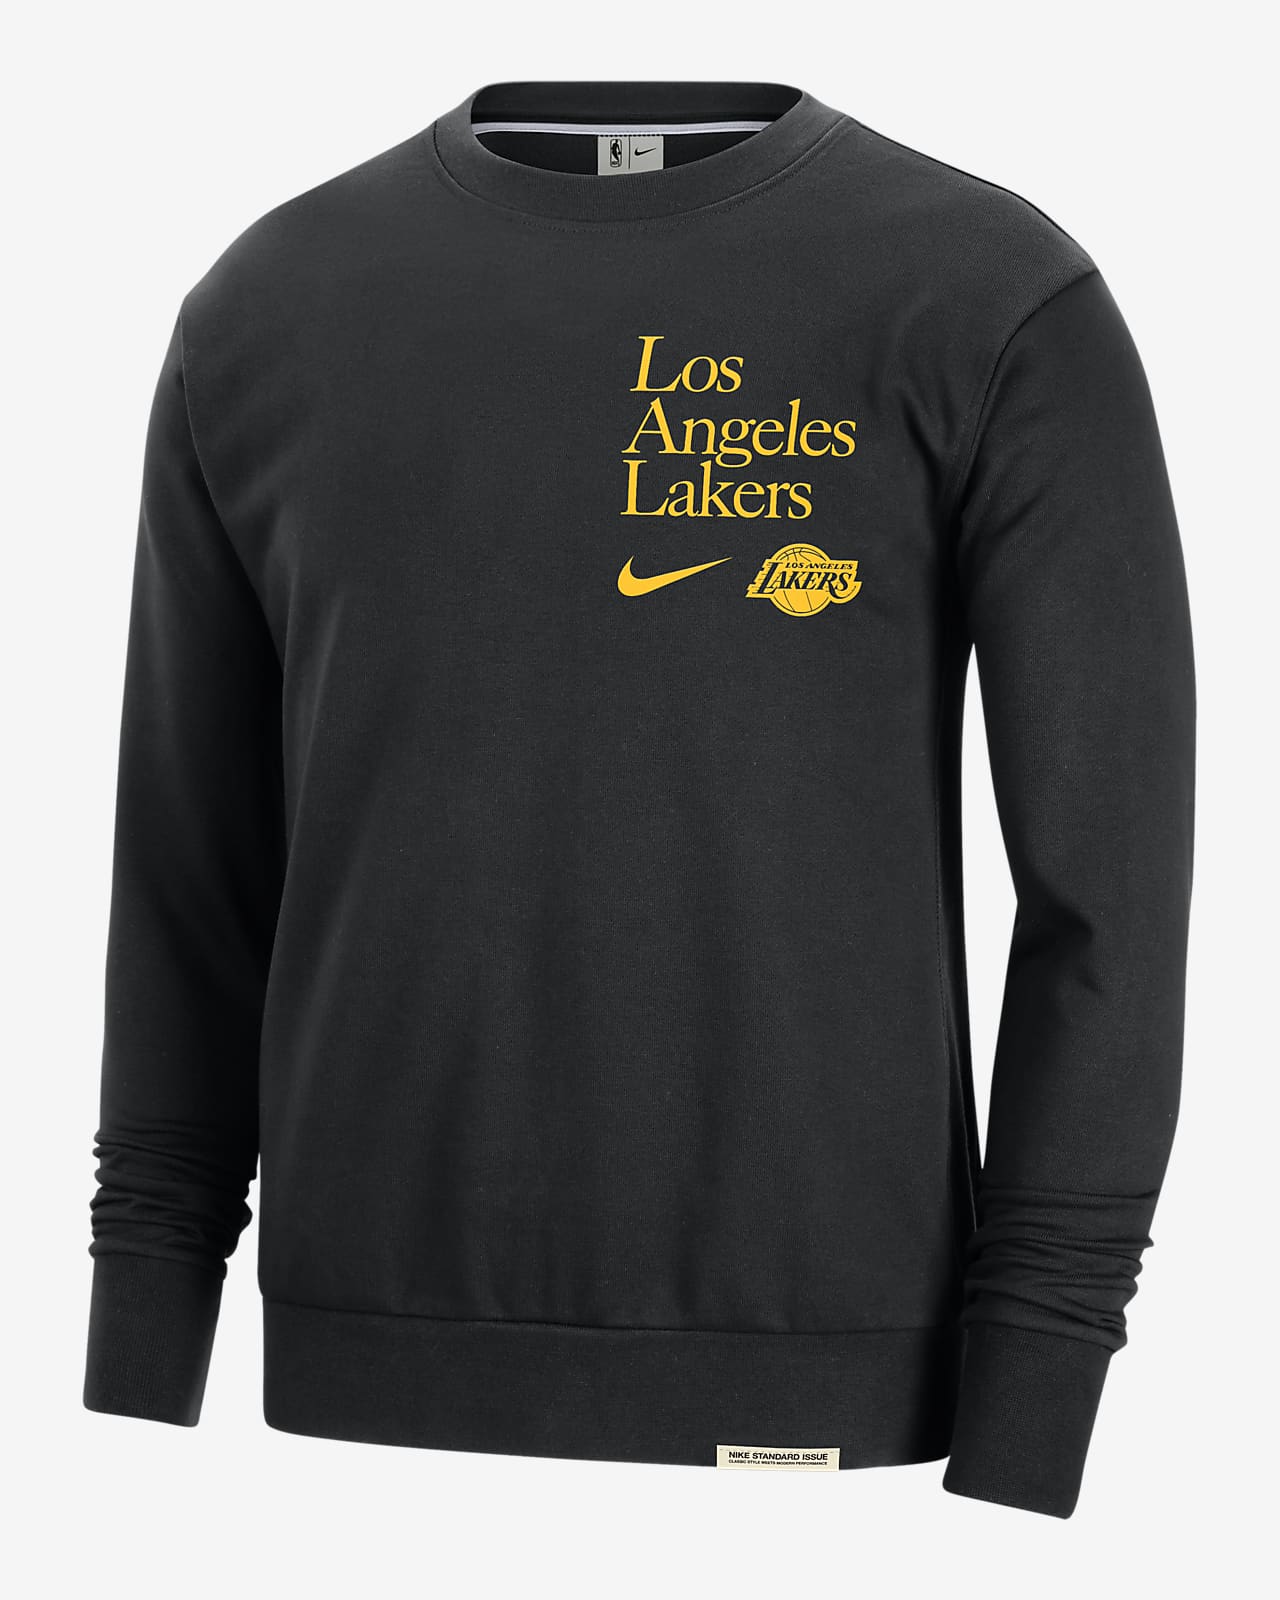 洛杉矶湖人队 Standard Issue Nike Dri-FIT NBA 男子速干圆领运动衫